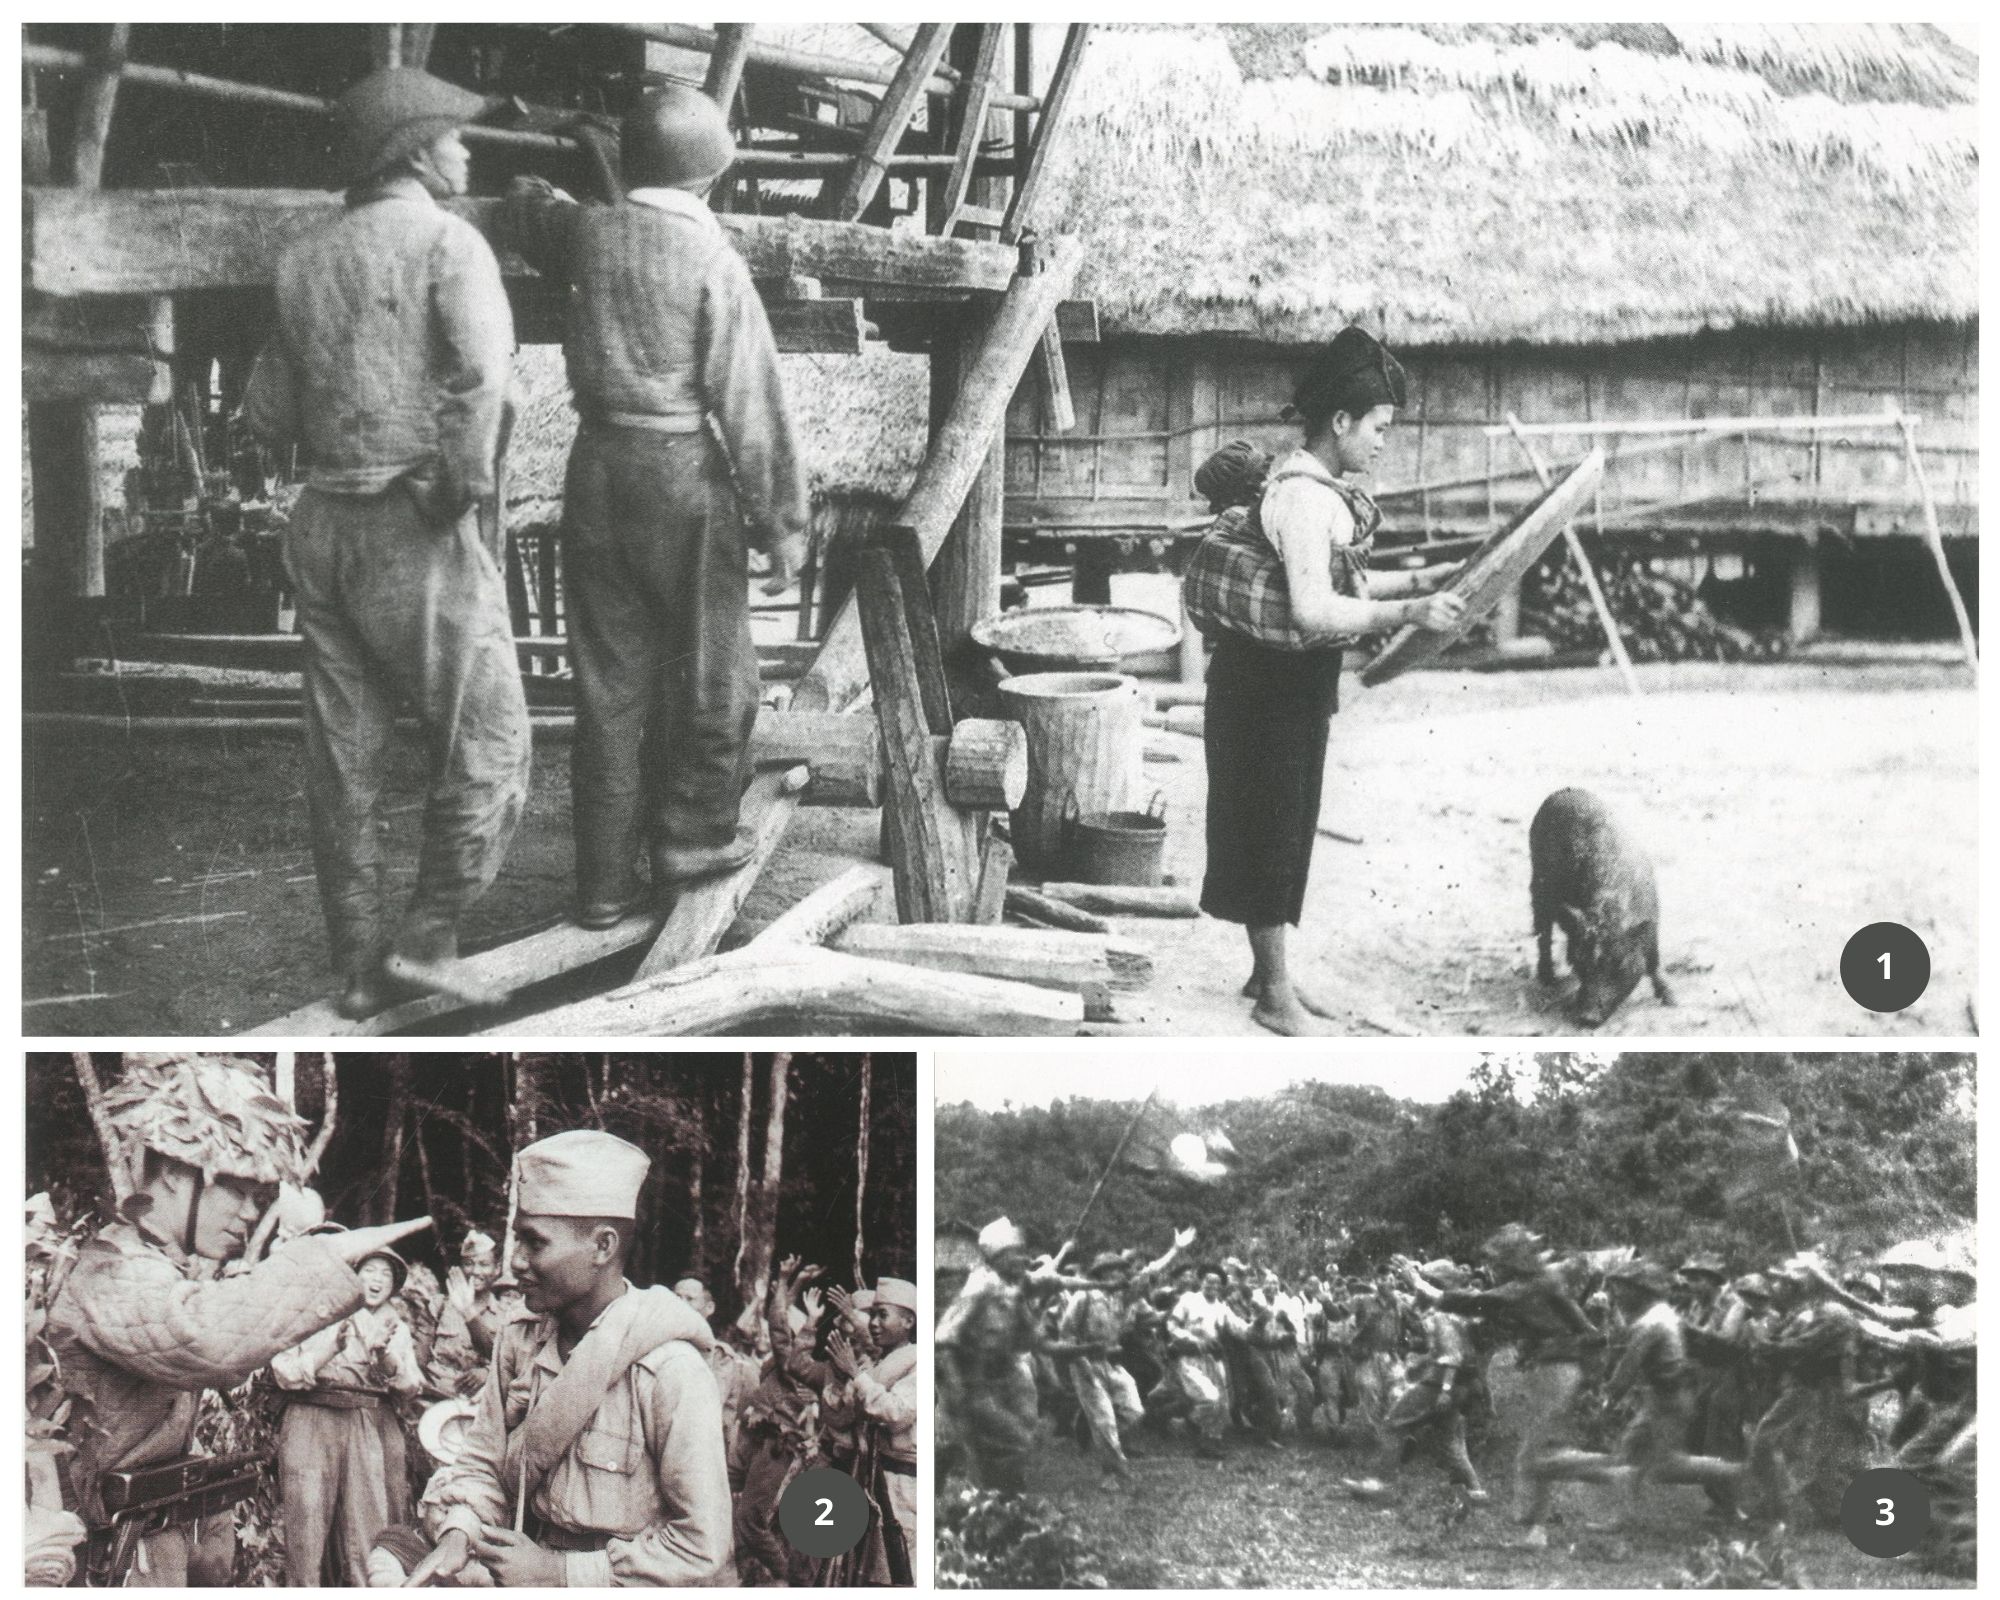 Kỷ niệm 70 năm Chiến thắng Thượng Lào (1953-2023) - Bài 2: Thắng lợi của tinh thần quốc tế vô sản cao cả